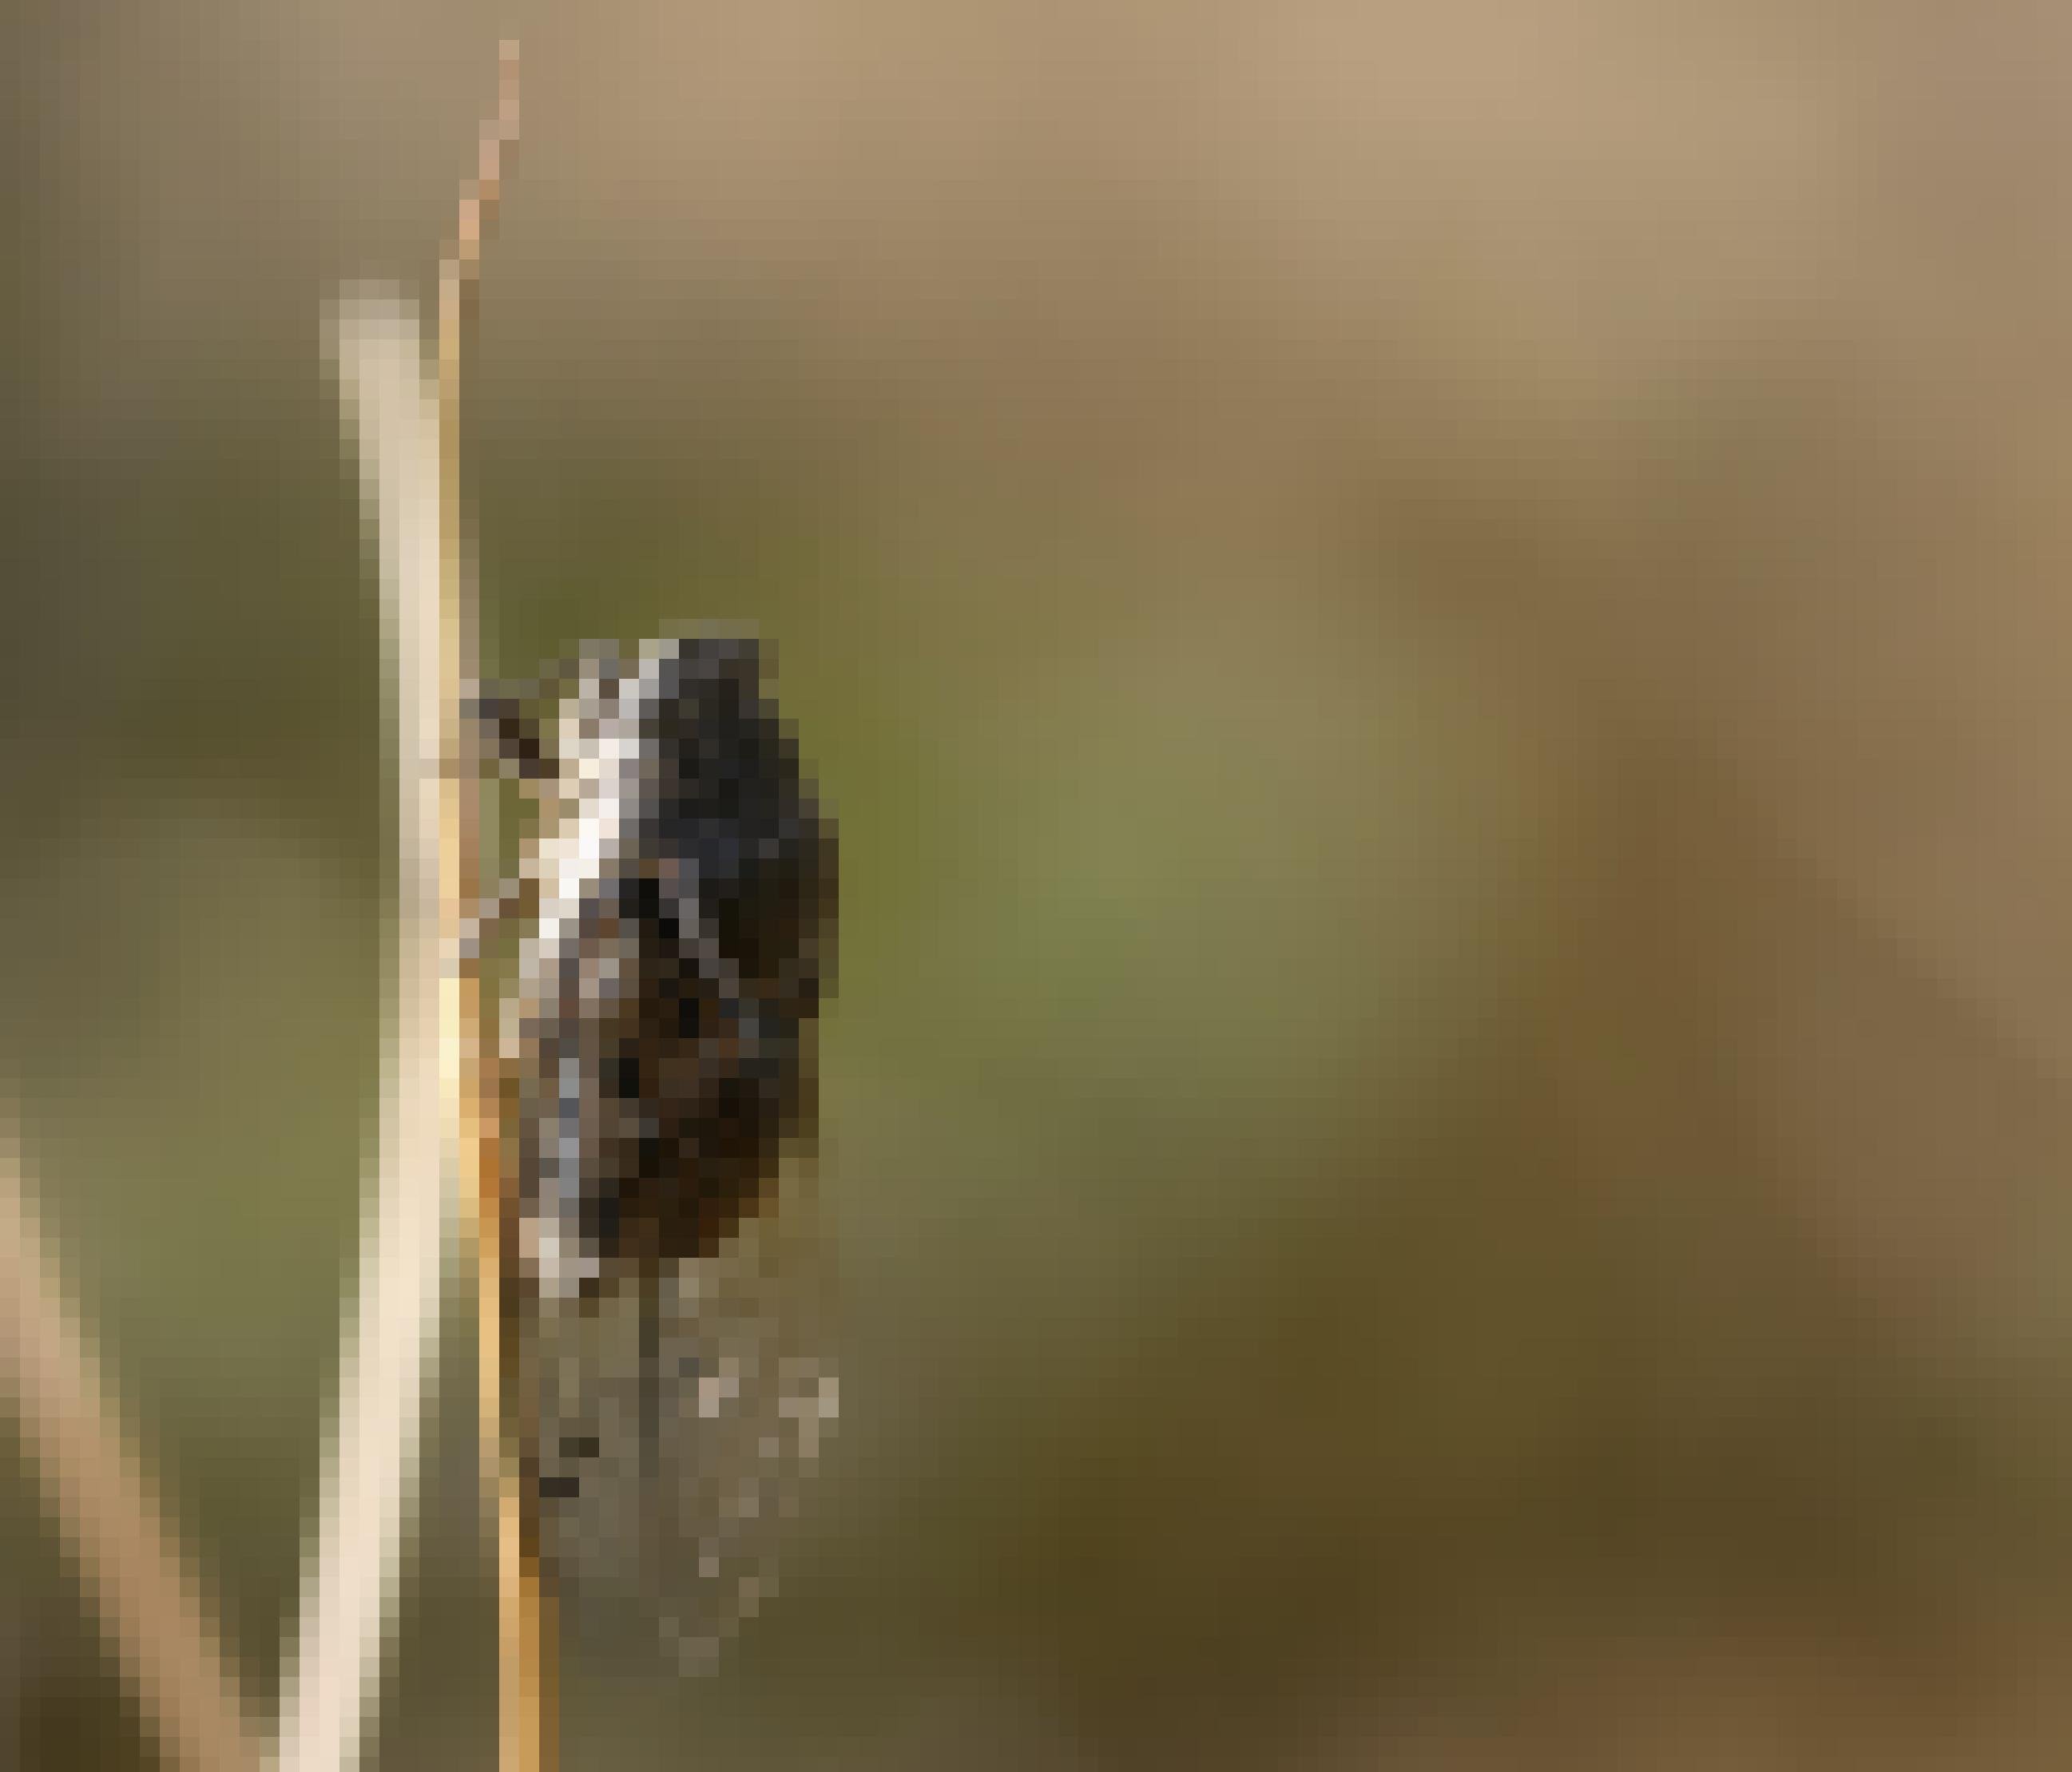 Eine kleine unscheinbare grau-beige Apachen-Zikade sitzt senkrecht an einem Grashalm. Die Flügel sind durchsichtig und etwa doppelt so lang wie der Körper. Das Insekt übersteht extreme Hitze durch starkes Schwitzen.